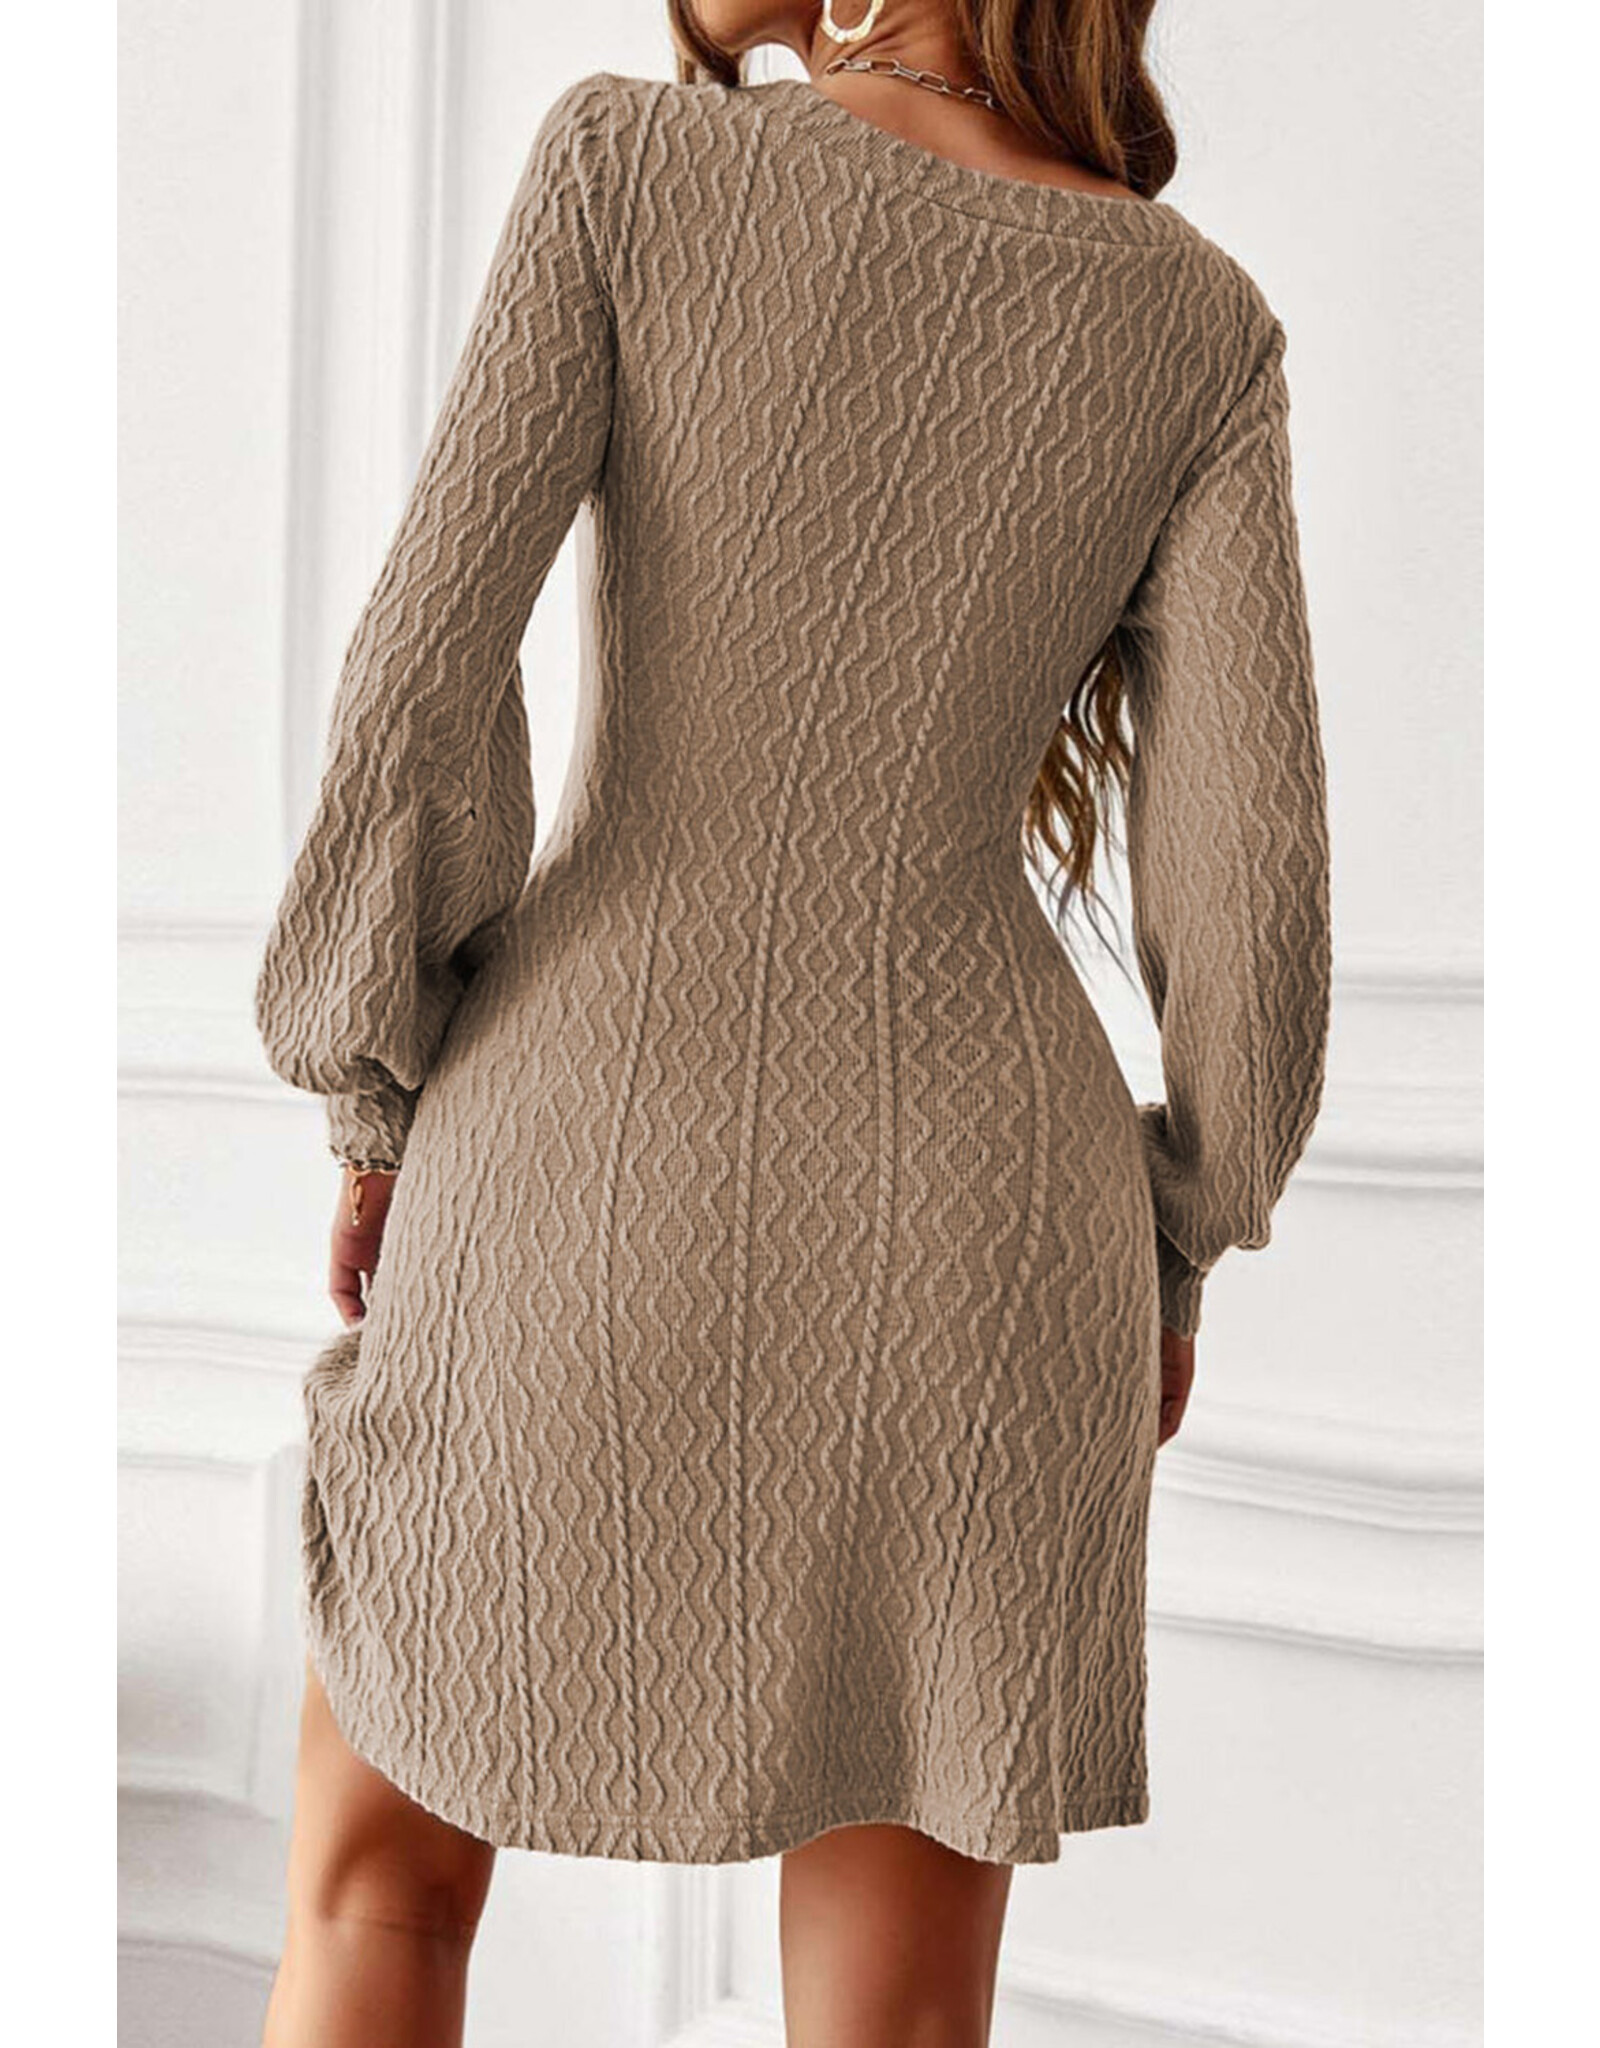 LATA Beige Textured Sweater Dress